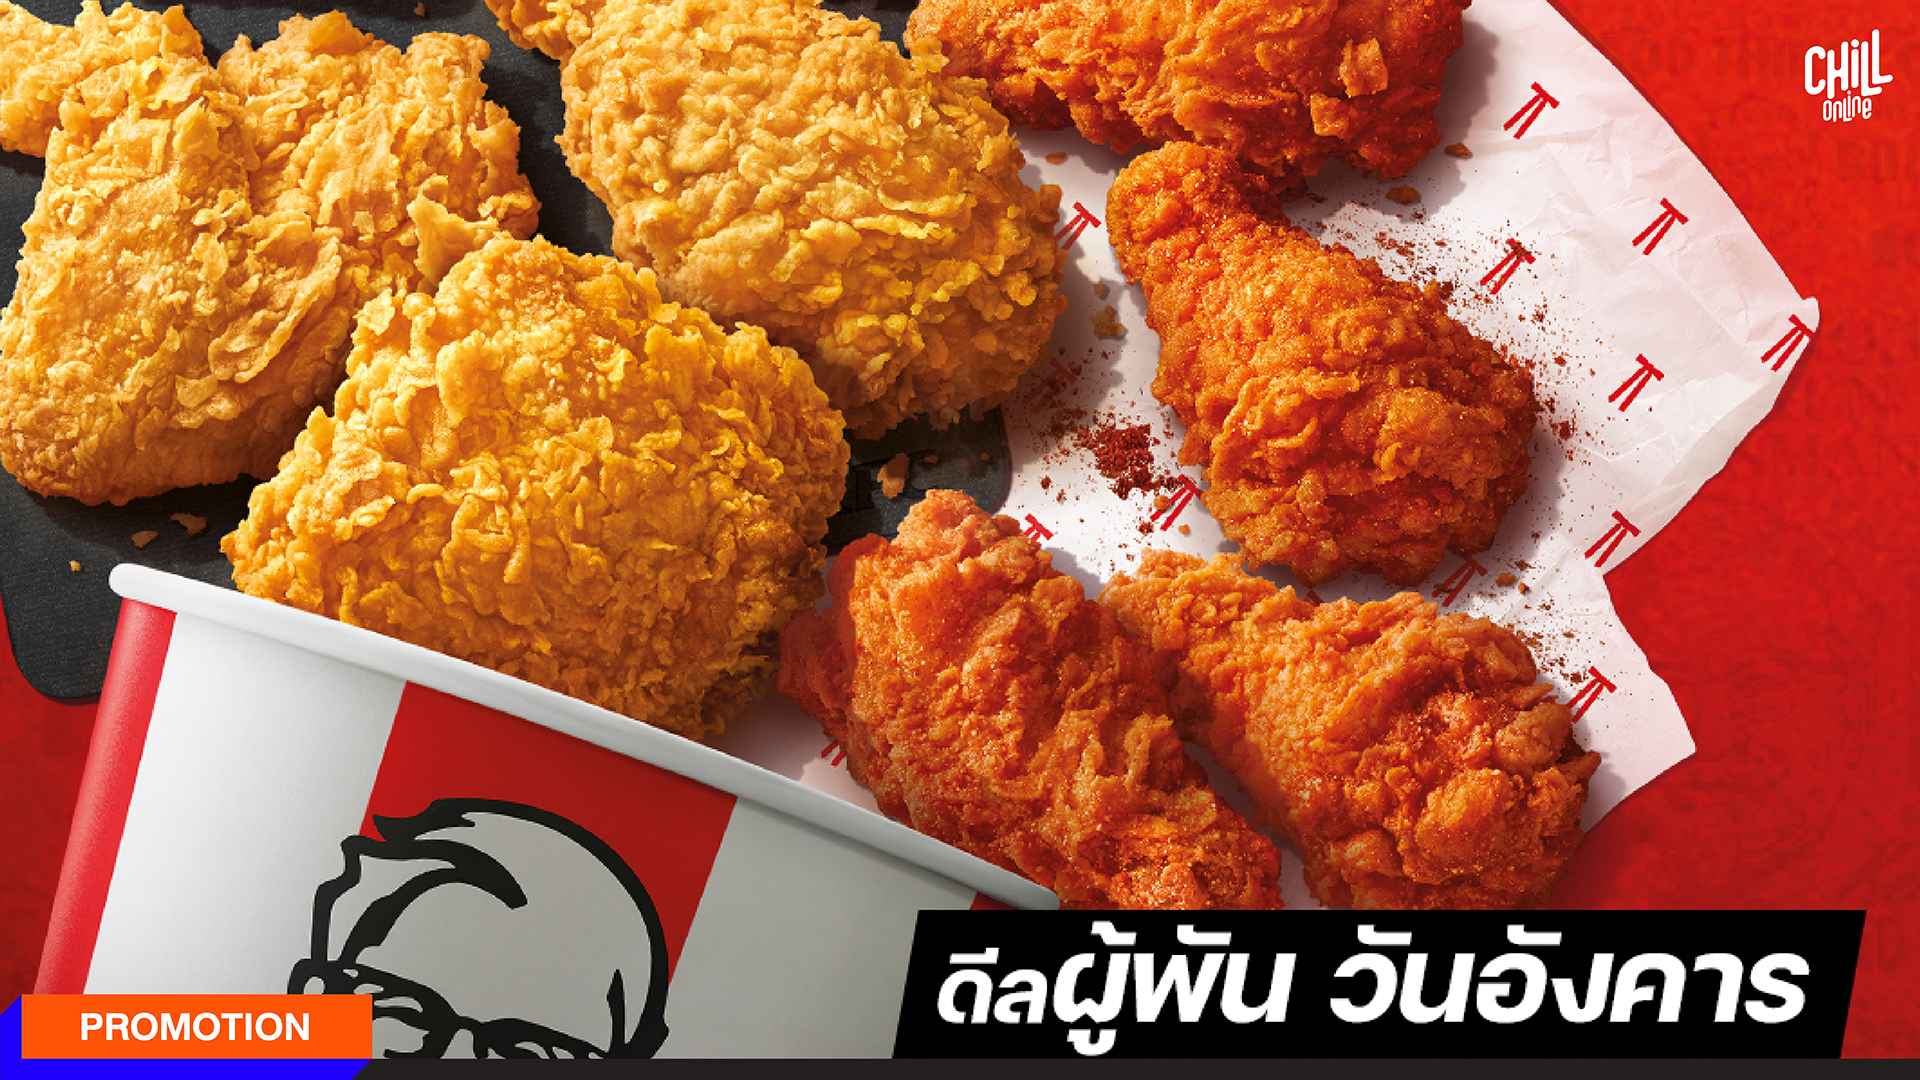 KFC ชวนเริ่มต้นใหม่ กับโปรเดิม ‘ผู้พัน วันอังคาร’ 9 ชิ้น 169.-